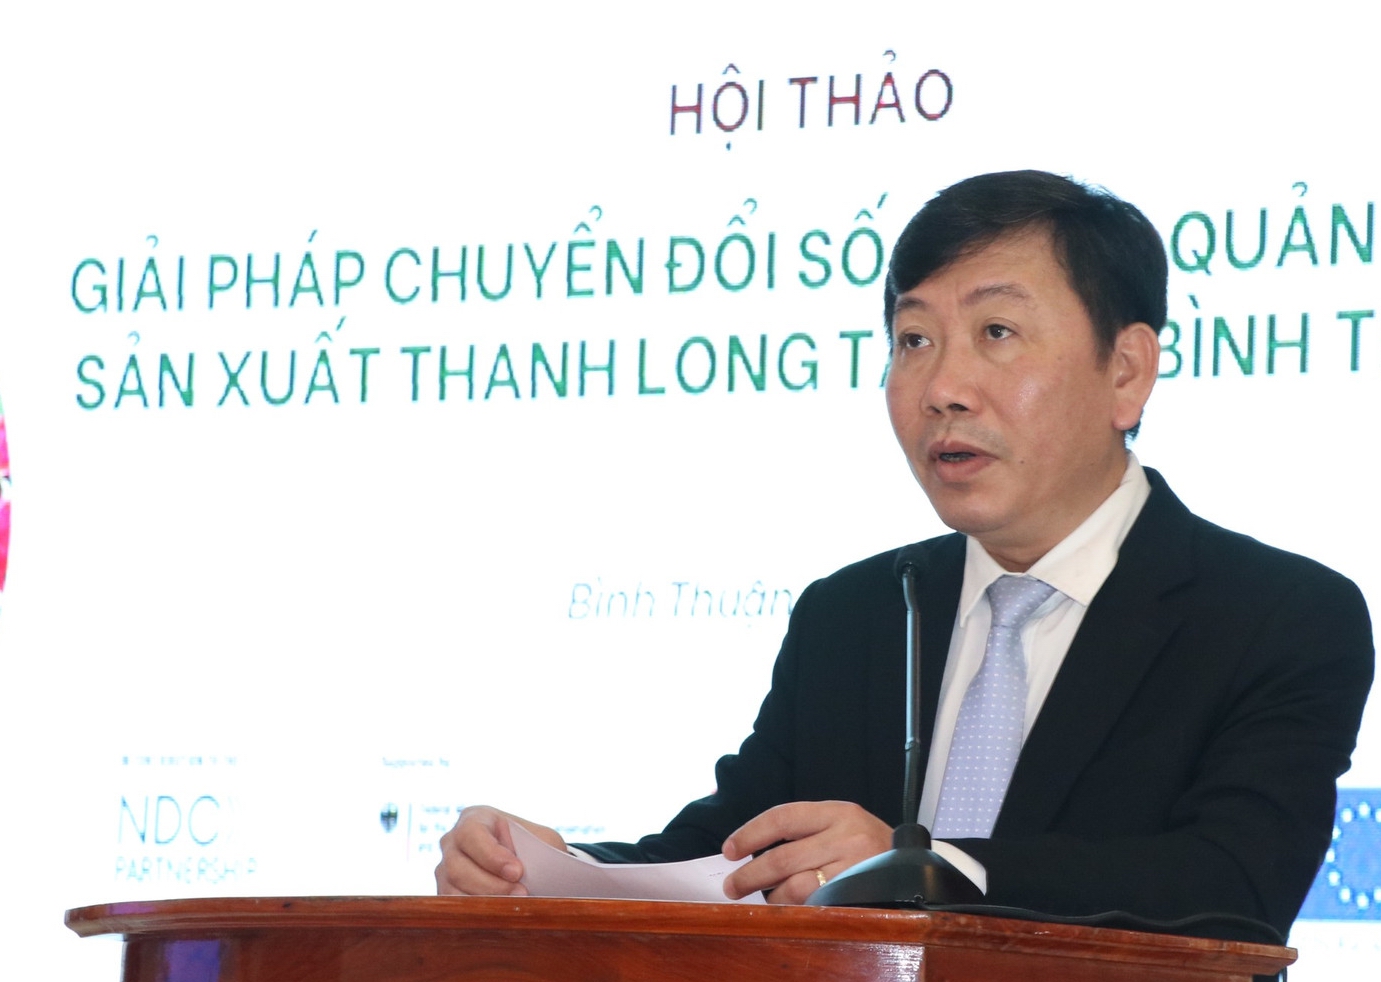 Áp dụng chuyển đổi số trong quản lý và sản xuất thanh long ở Bình Thuận - Ảnh 3.